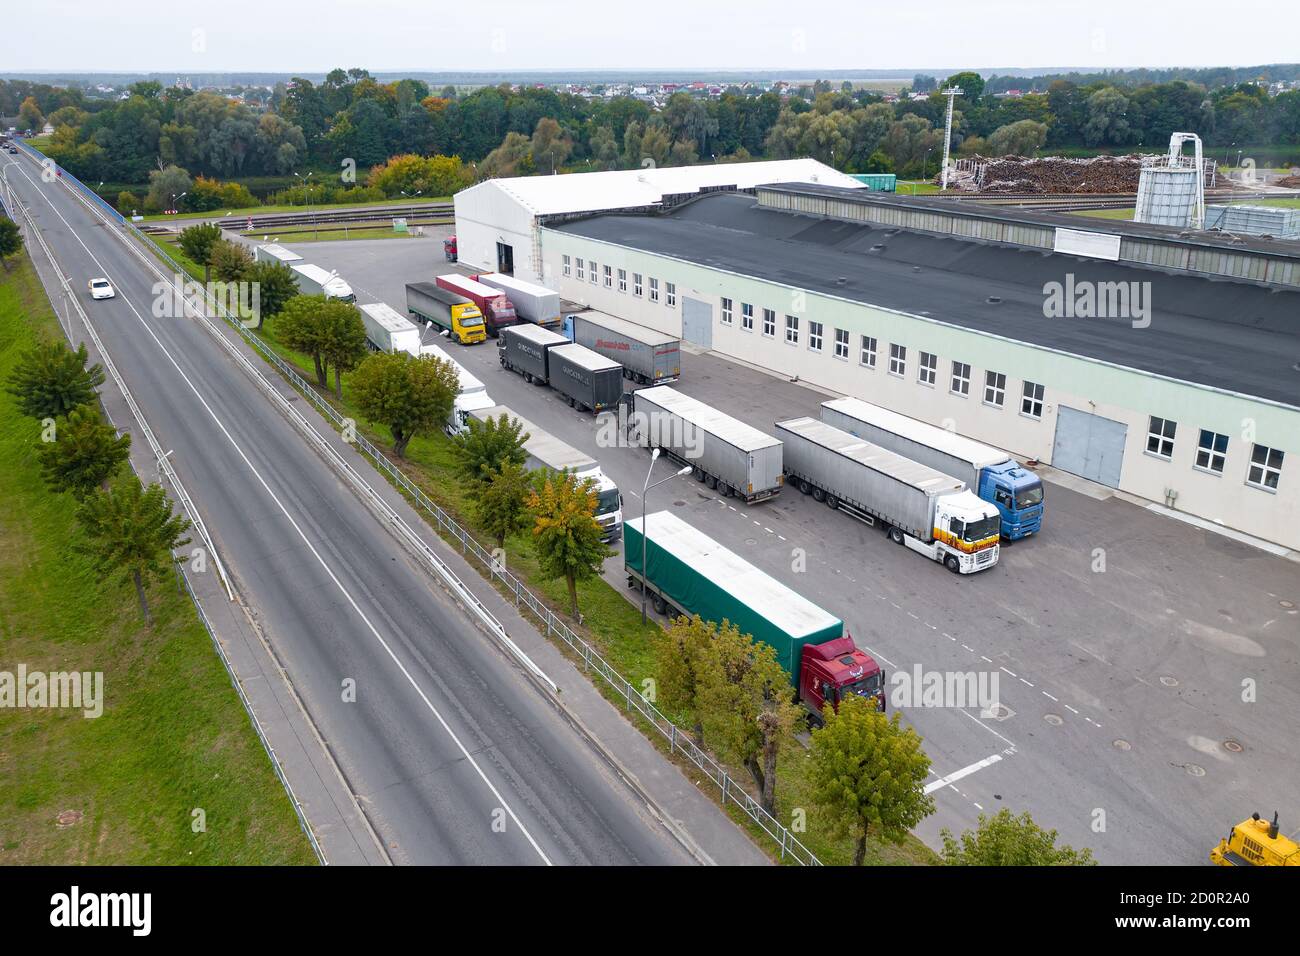 MINSK, BÉLARUS - SEPTEMBRE 2020 : usine de transformation d'une vue de dessus d'arbre. Les chariots sont en attente de chargement. Banque D'Images